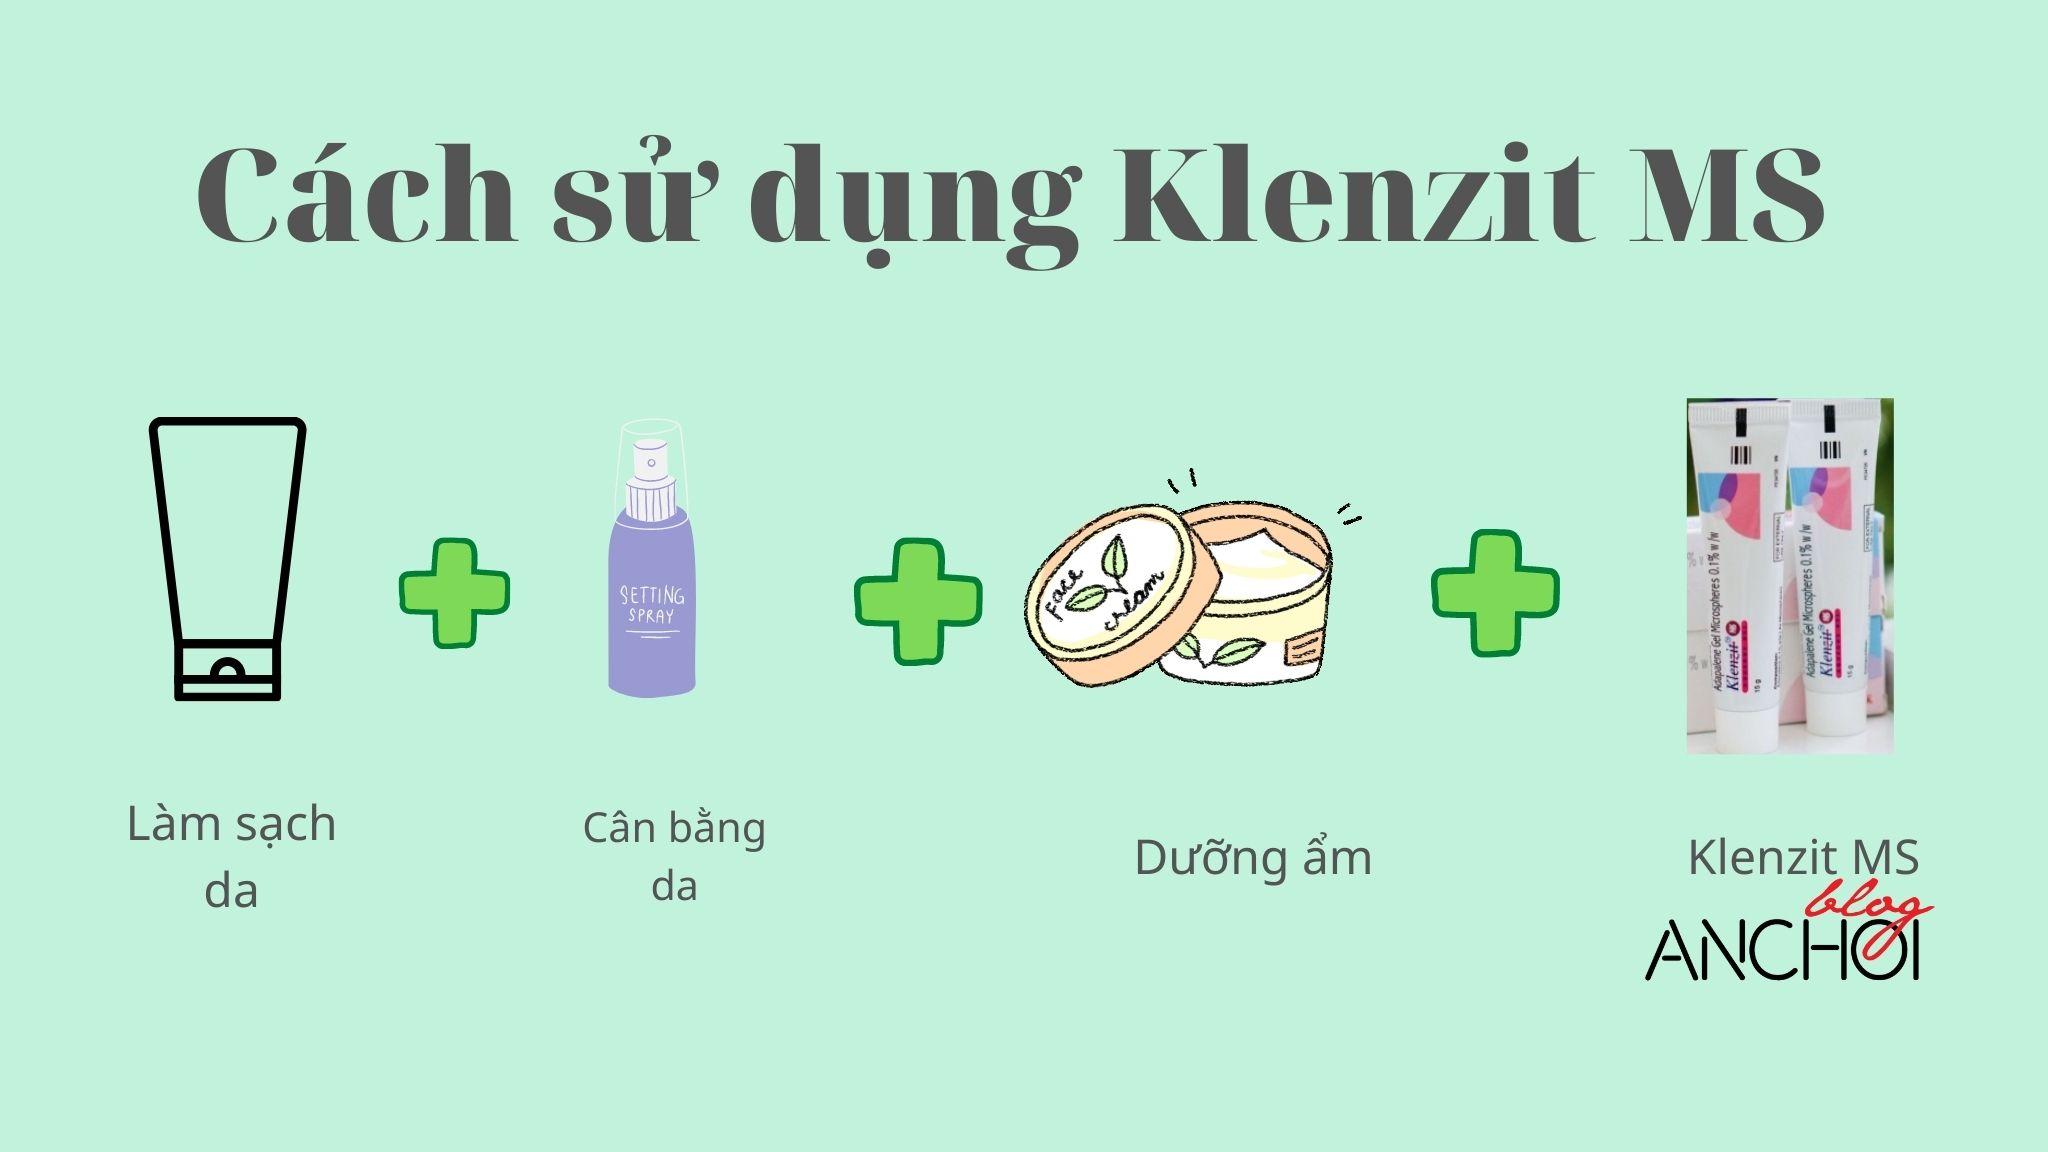 Quy trình dưỡng da để sử dụng Klenzit hiệu quả (Ảnh: nquynhvy)